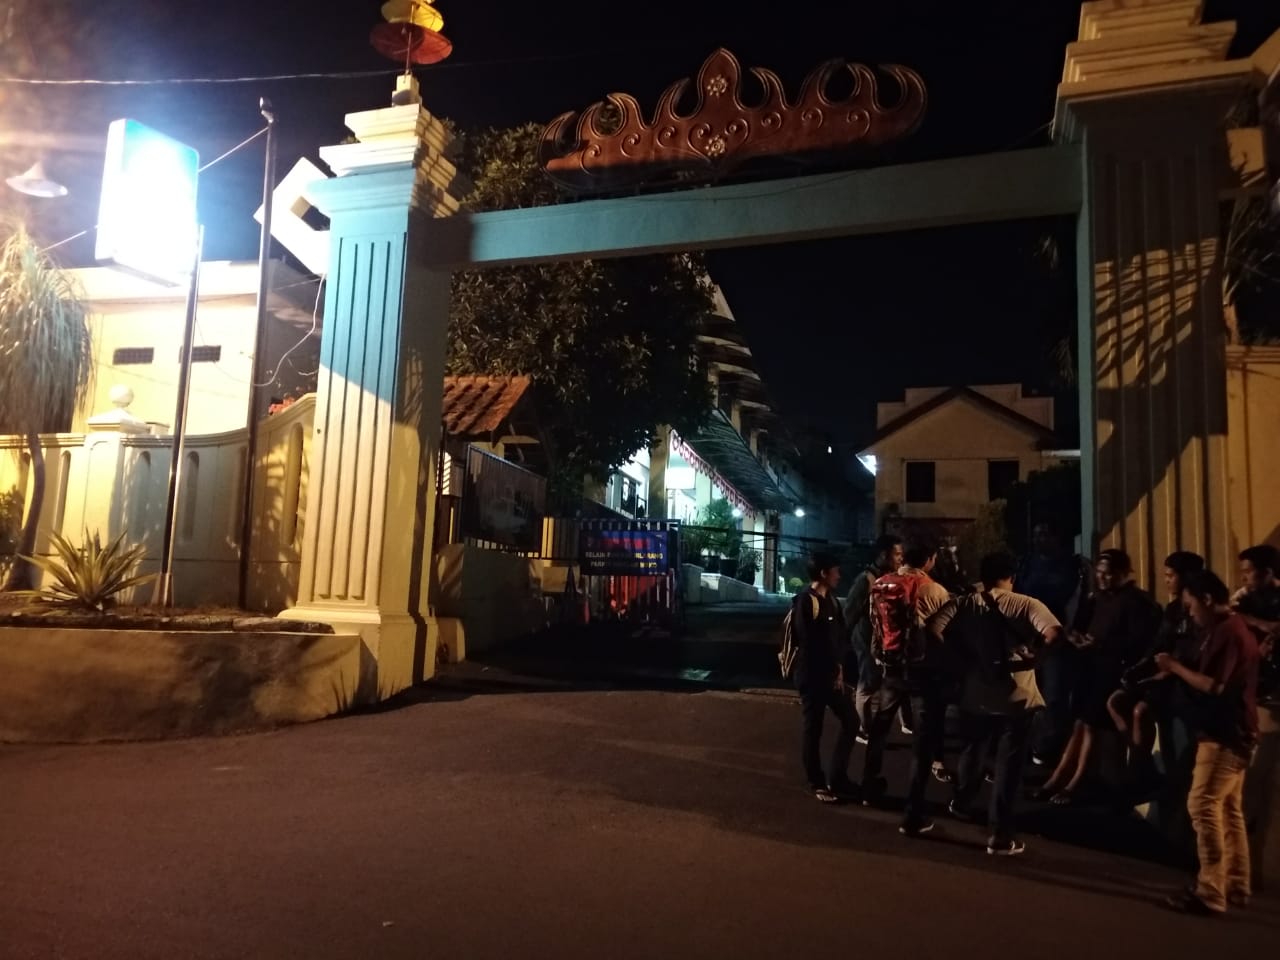 KPK Dikabarkan Mengarah ke Mapolda, Jurnalis Ramai di Pintu Masuk